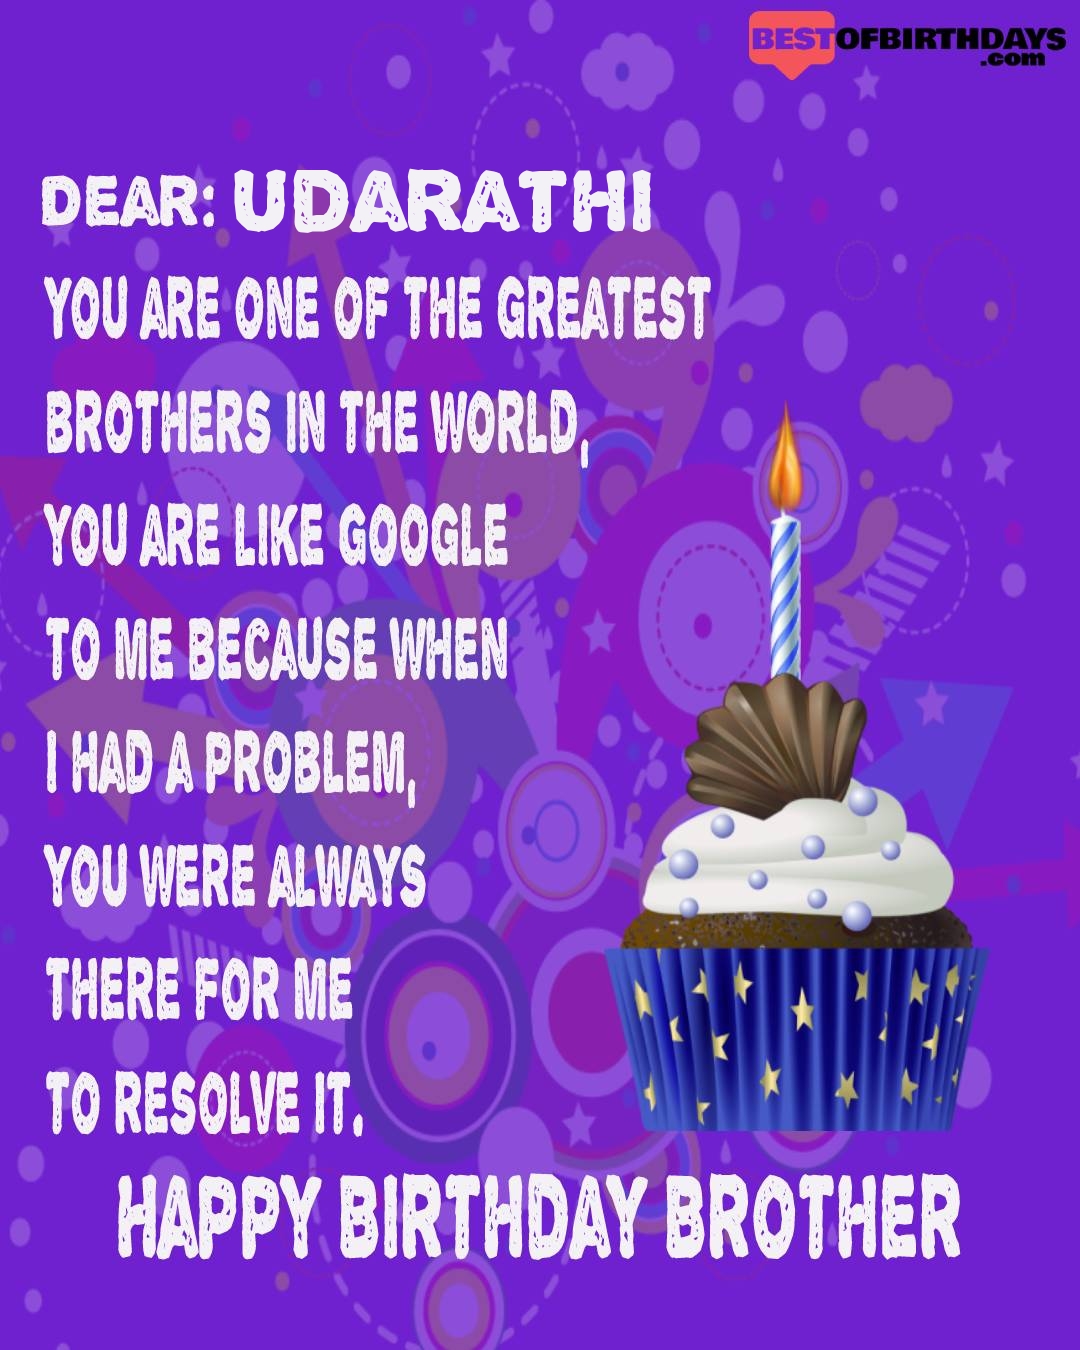 Happy birthday udarathi bhai brother bro